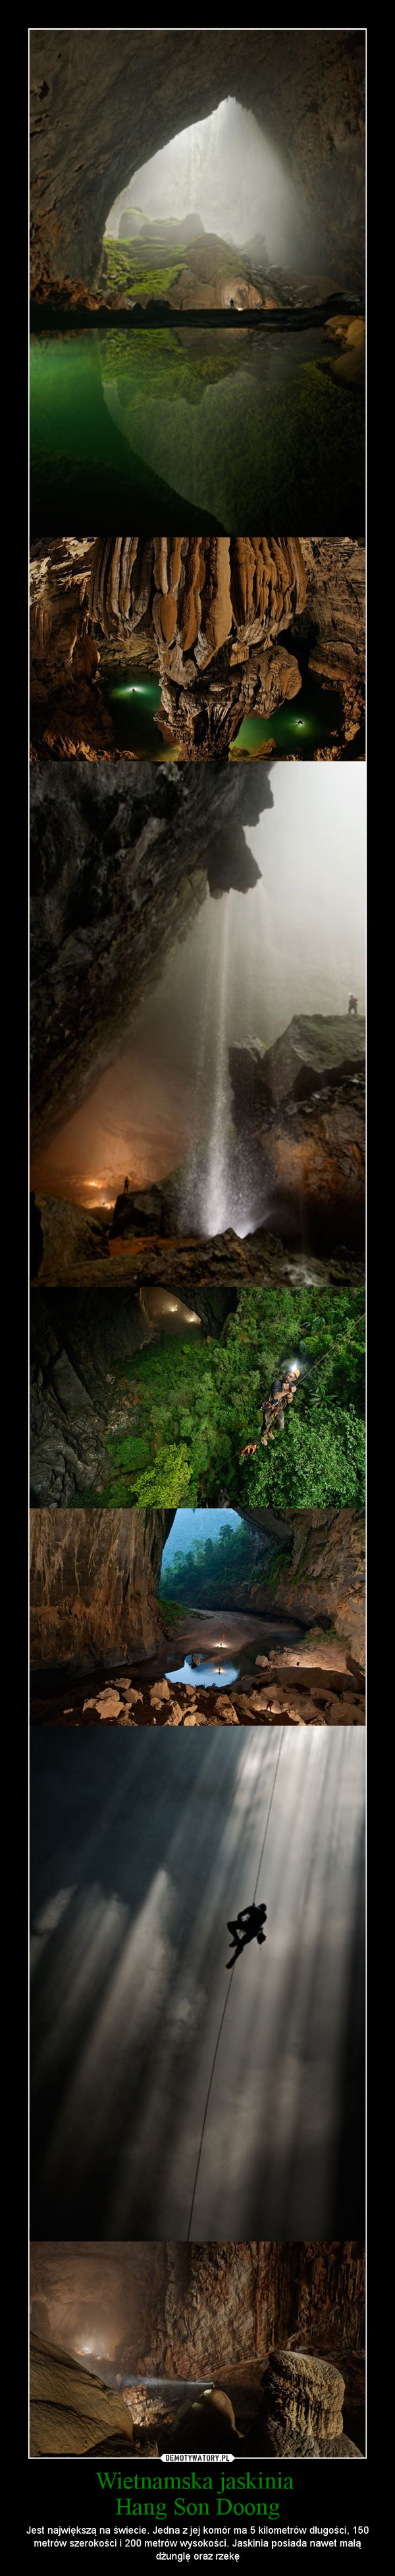 Wietnamska jaskinia Hang Son Doong – Jest największą na świecie. Jedna z jej komór ma 5 kilometrów długości, 150 metrów szerokości i 200 metrów wysokości. Jaskinia posiada nawet małą dżunglę oraz rzekę 